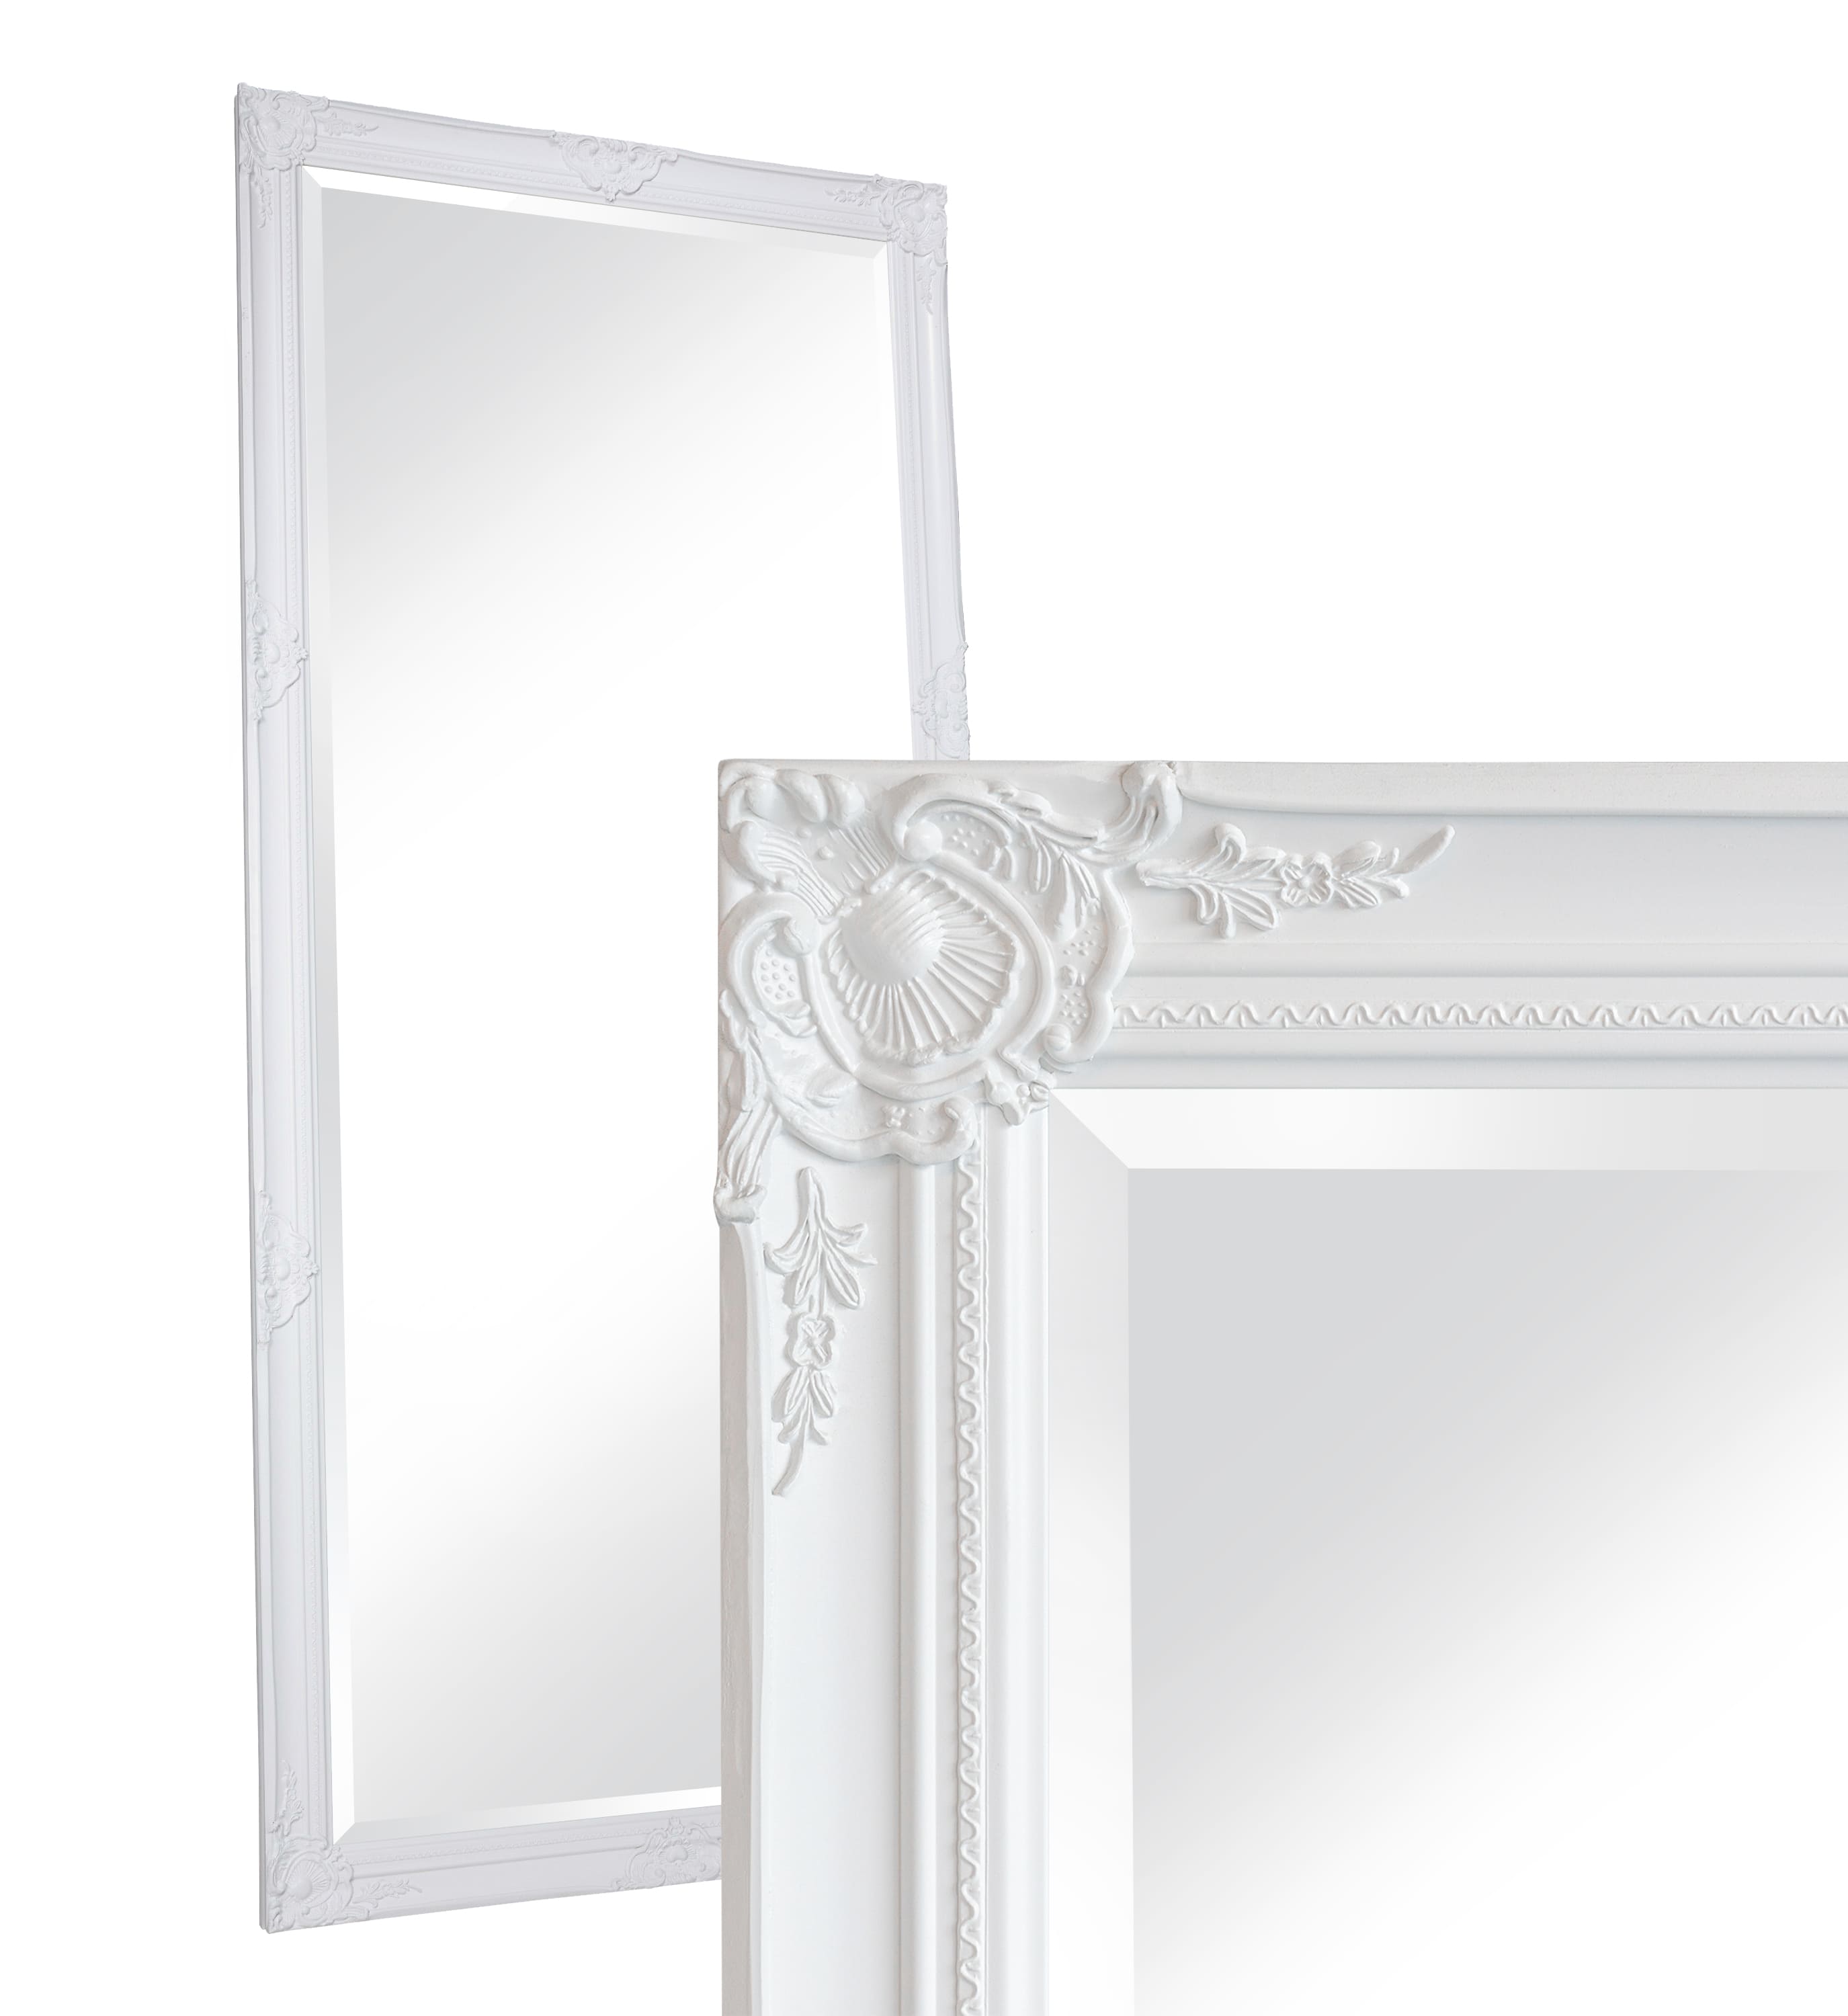 LC Home Wandspiegel Barock XXL Spiegel Weiß ca. 200x100 cm Antik-Stil Ganzkörperspiegel